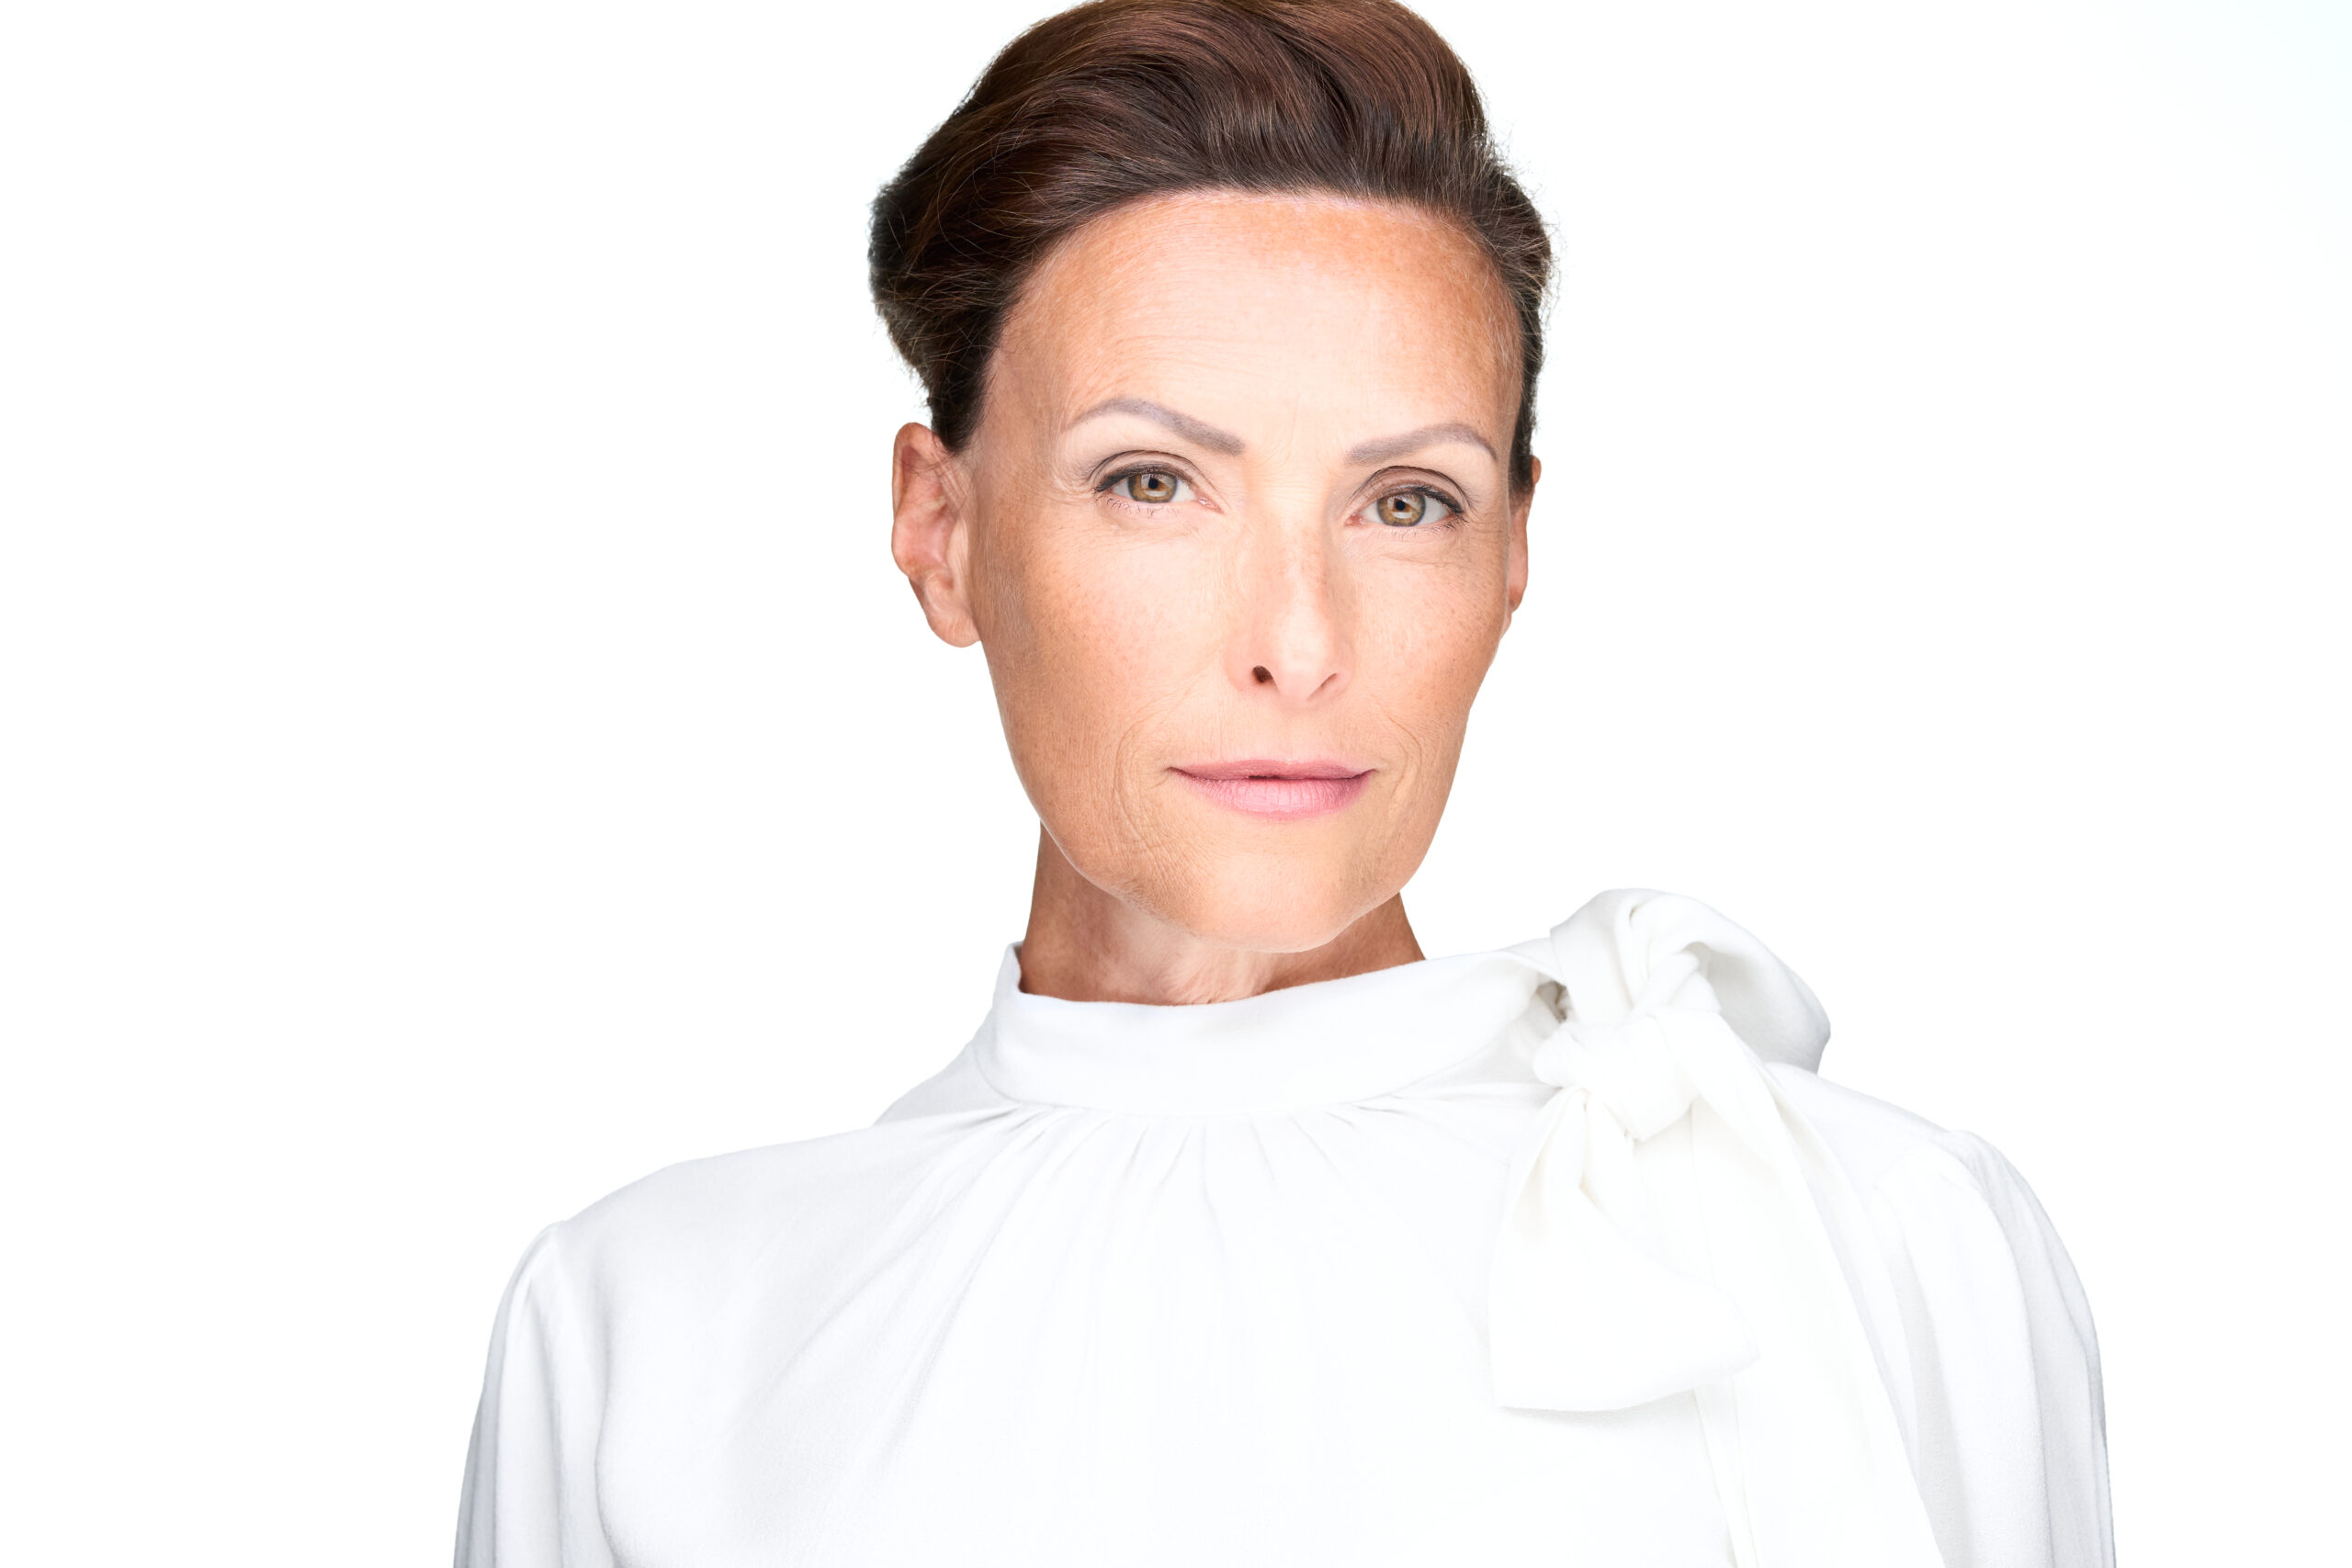 Actor Headshot von Frau in weißem Designer Hemd vor weißem Hintergrund